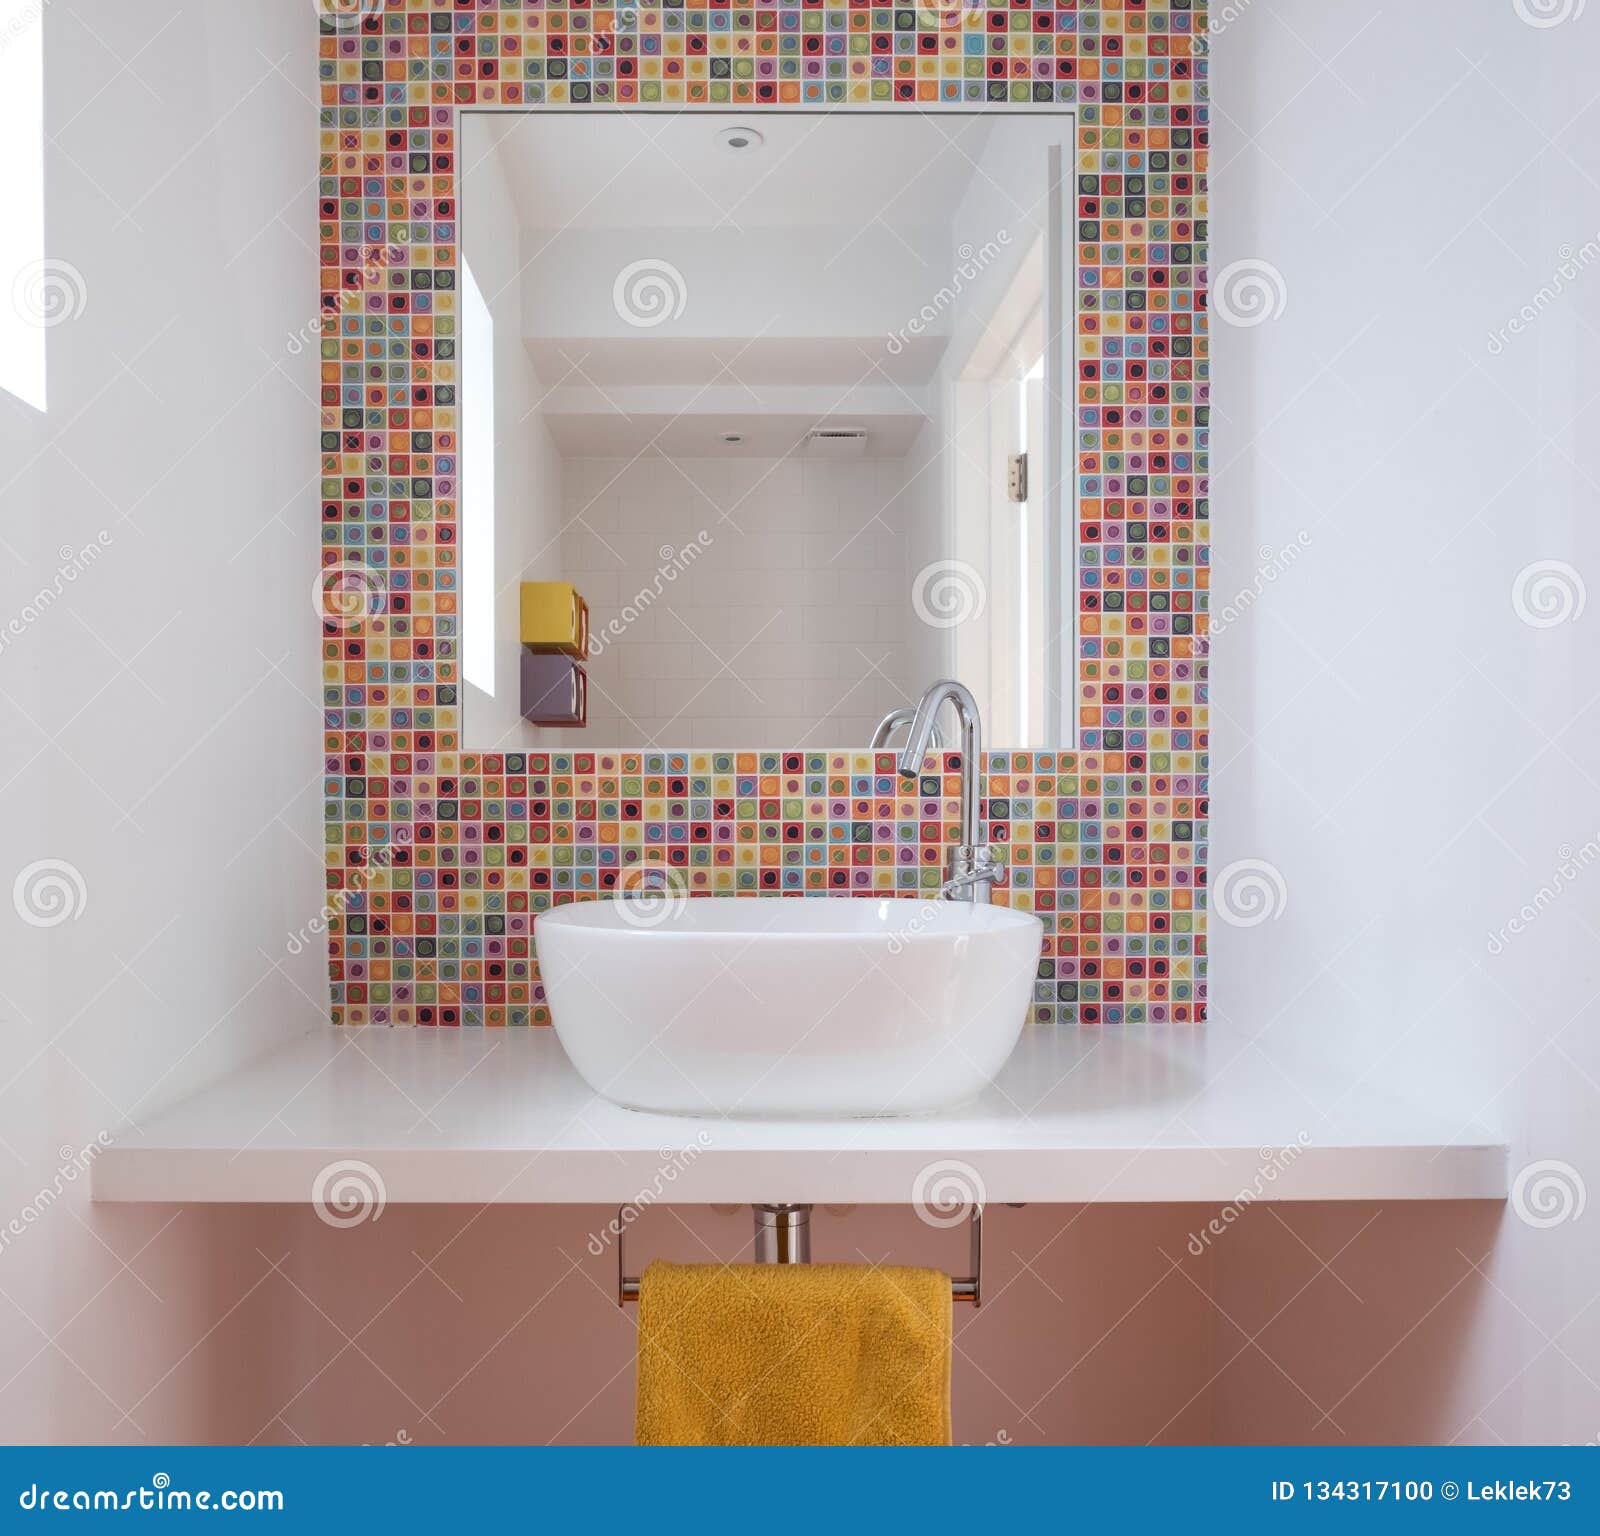 Contemporary Bathroom With Wash Basin